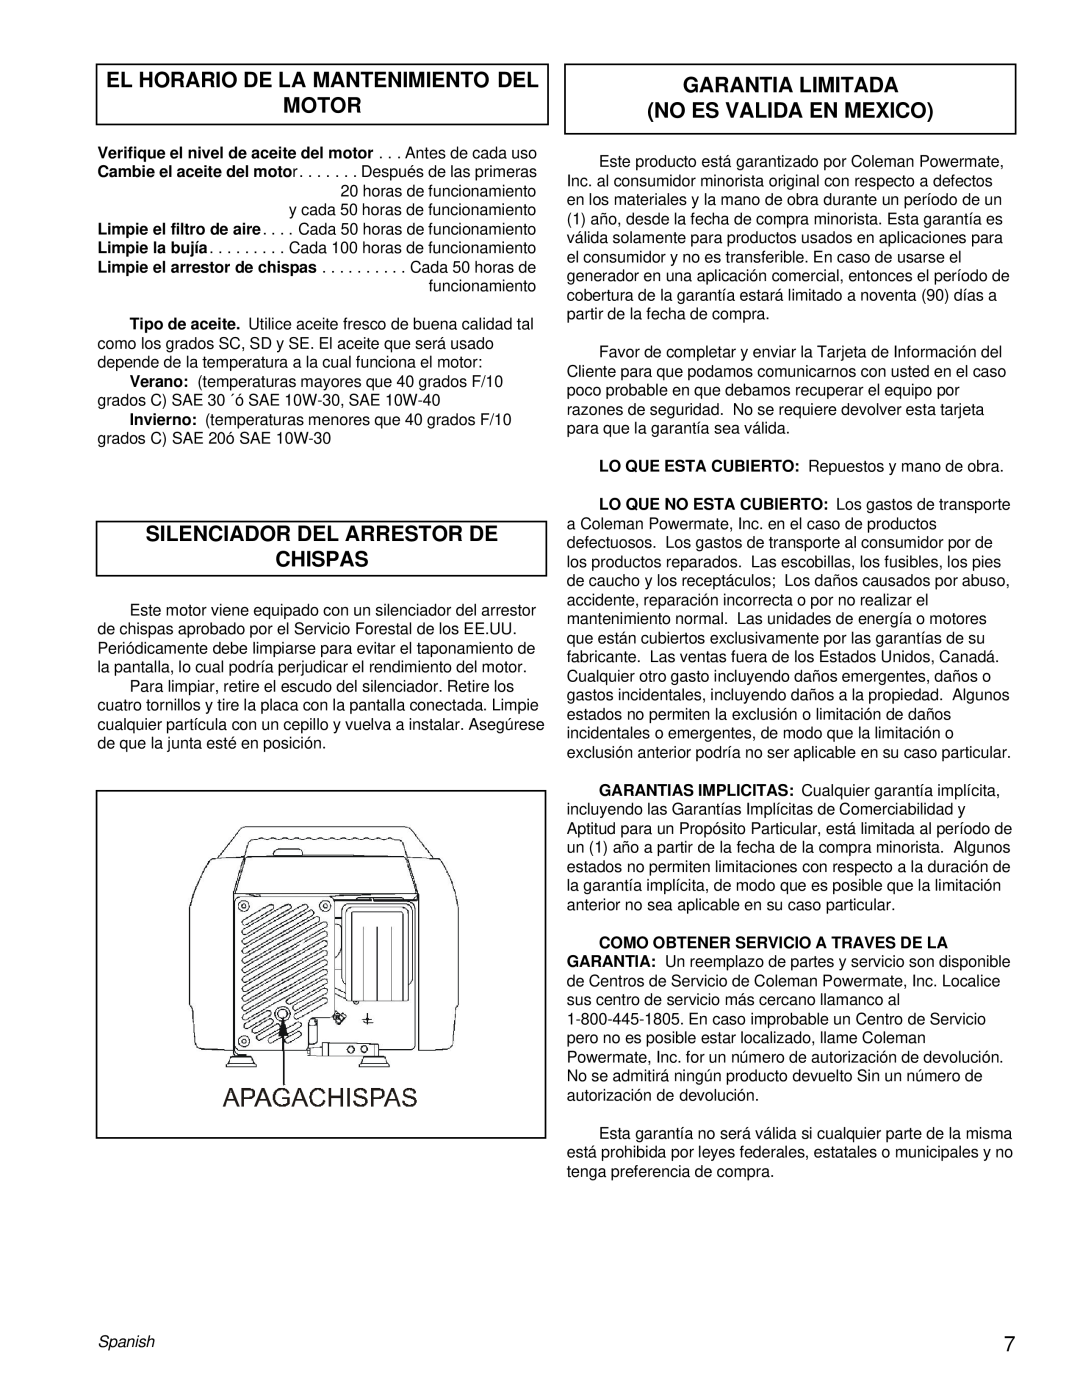 Powermate PC0401855 manual El Horario De La Mantenimiento Del Motor, Silenciador Del Arrestor De Chispas, Spanish 